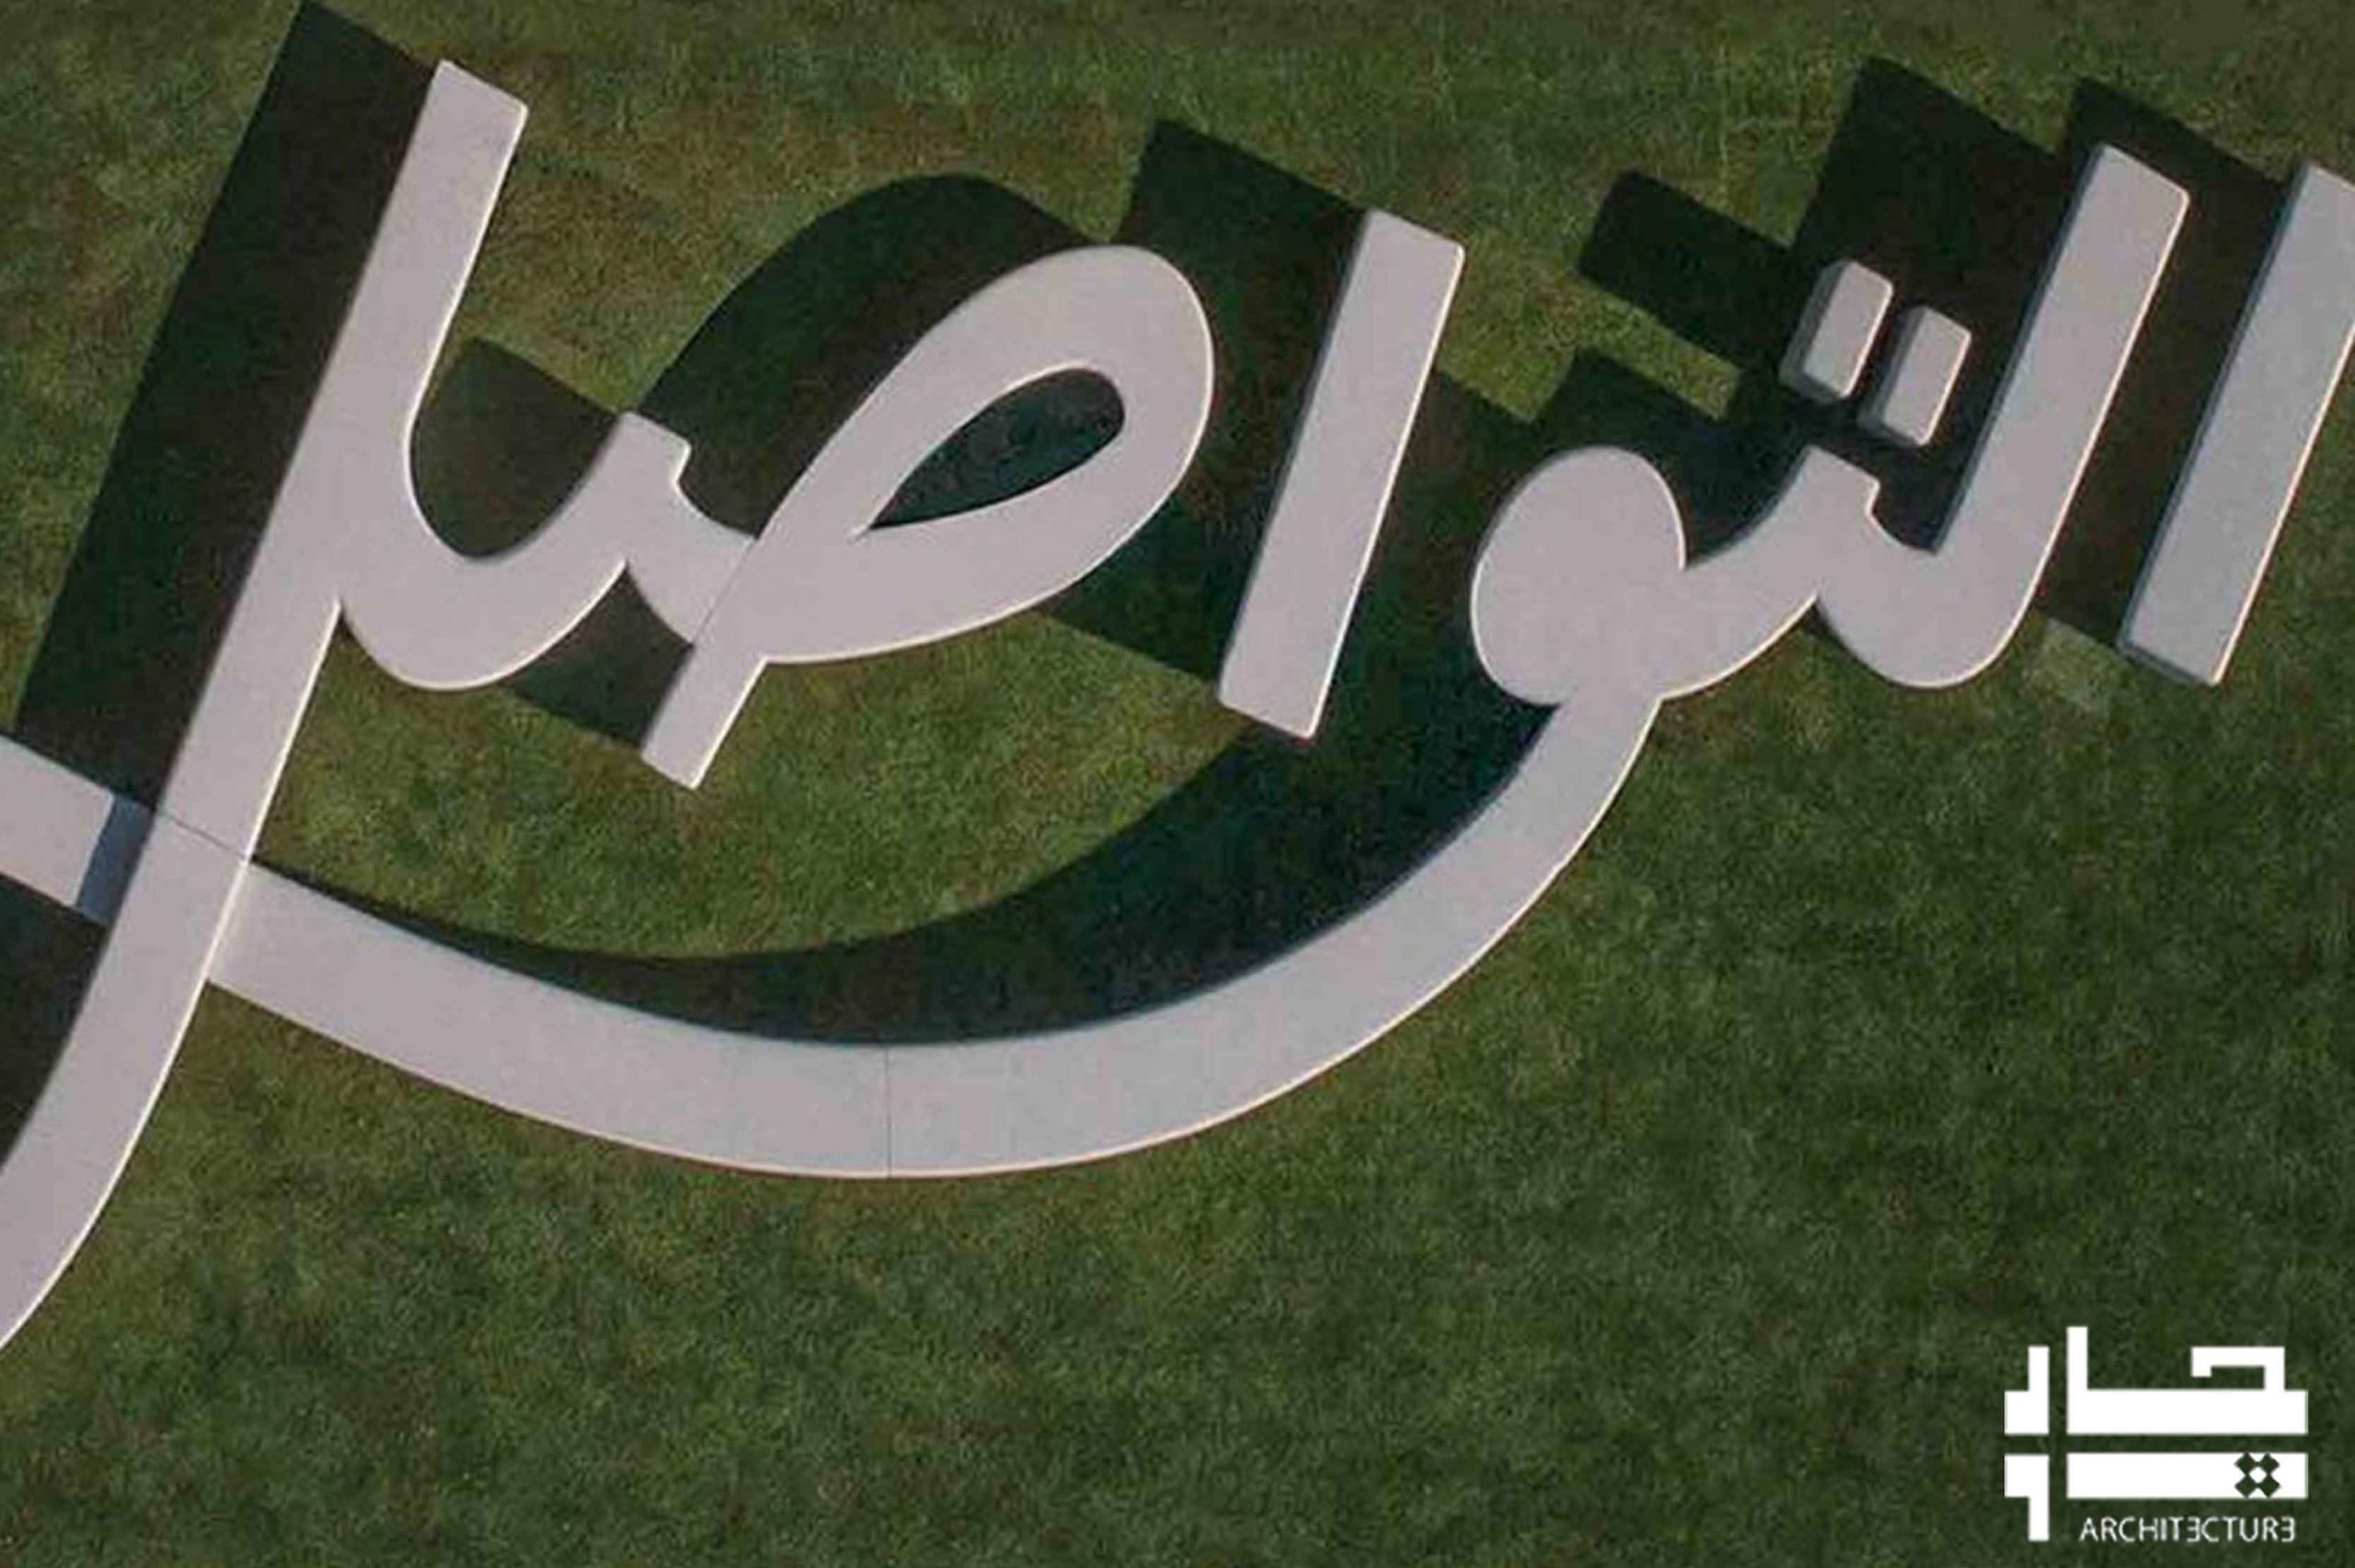 در نمایشگاه اکسپو  دبی می توانید روی نیمکت هایی الهام گرفته از خط عربی بنشینید